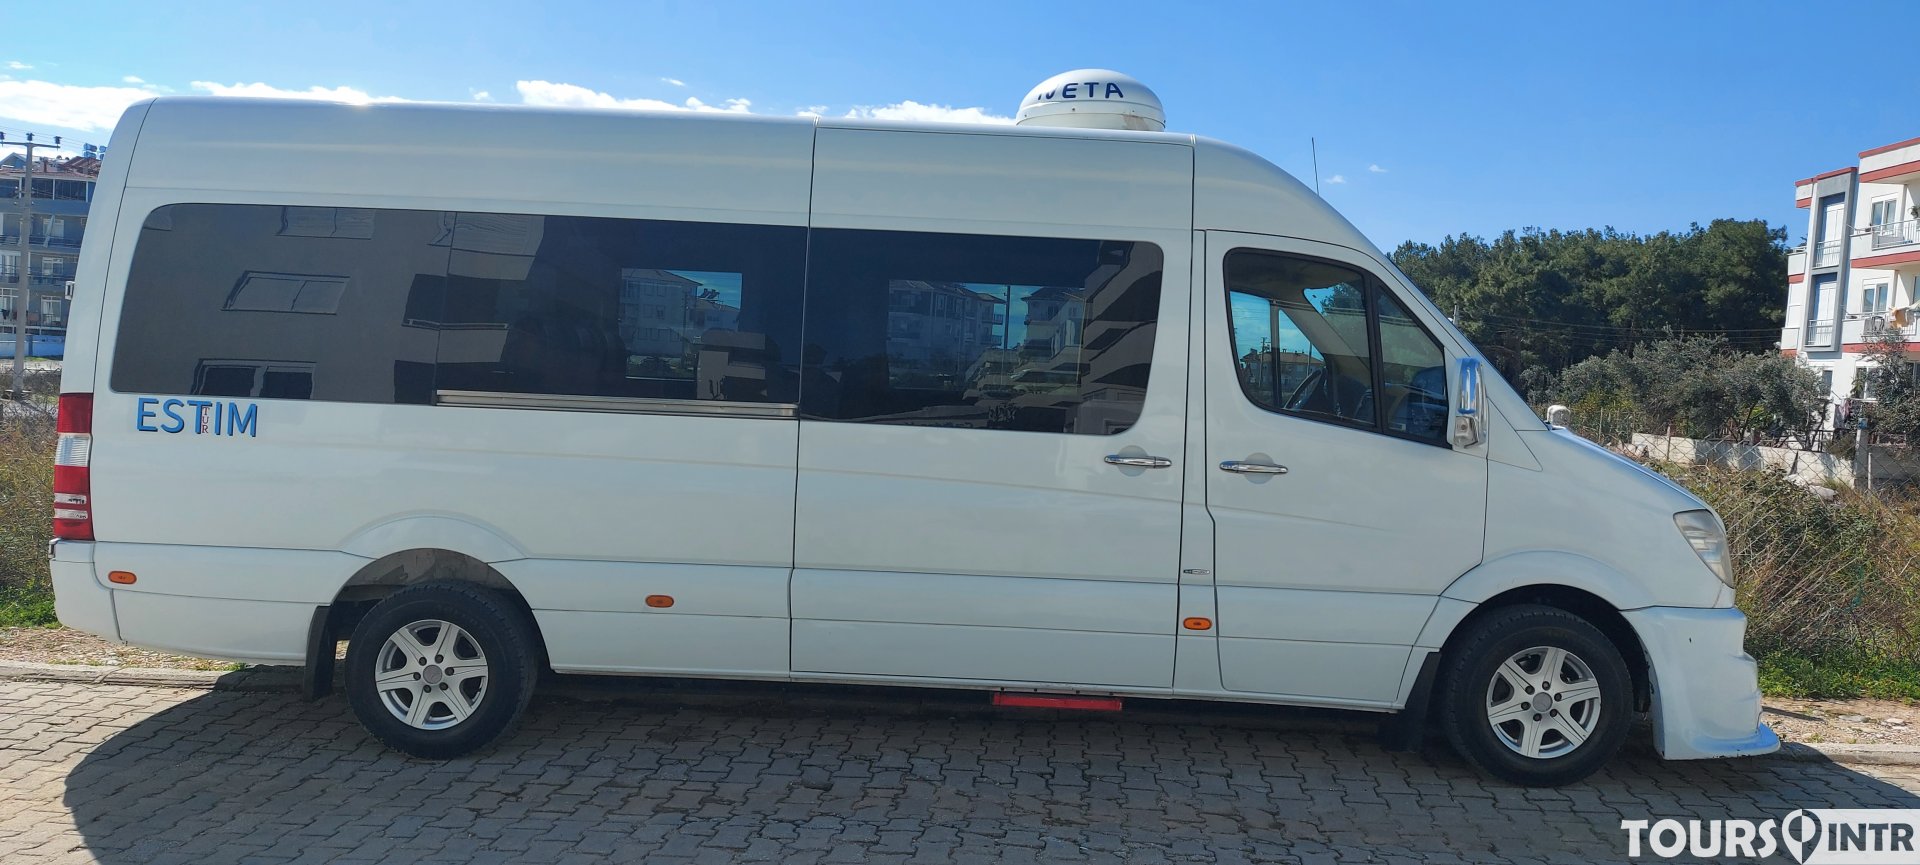 Наш трансфер в аэропорт и частный туристический автобус